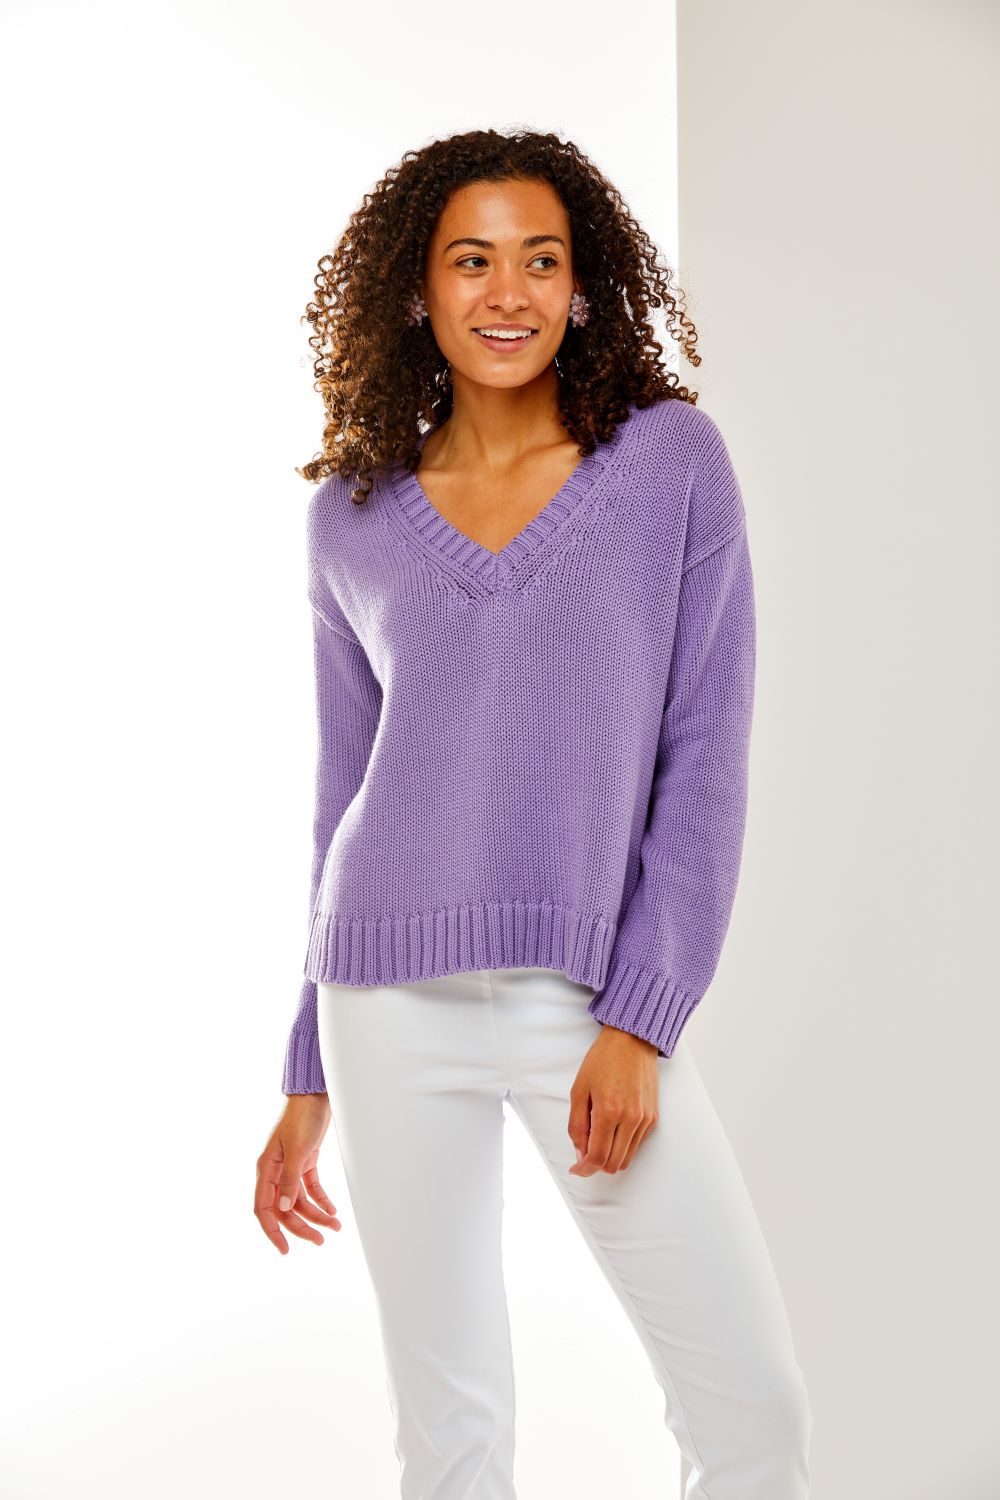 Woman in purple sweater